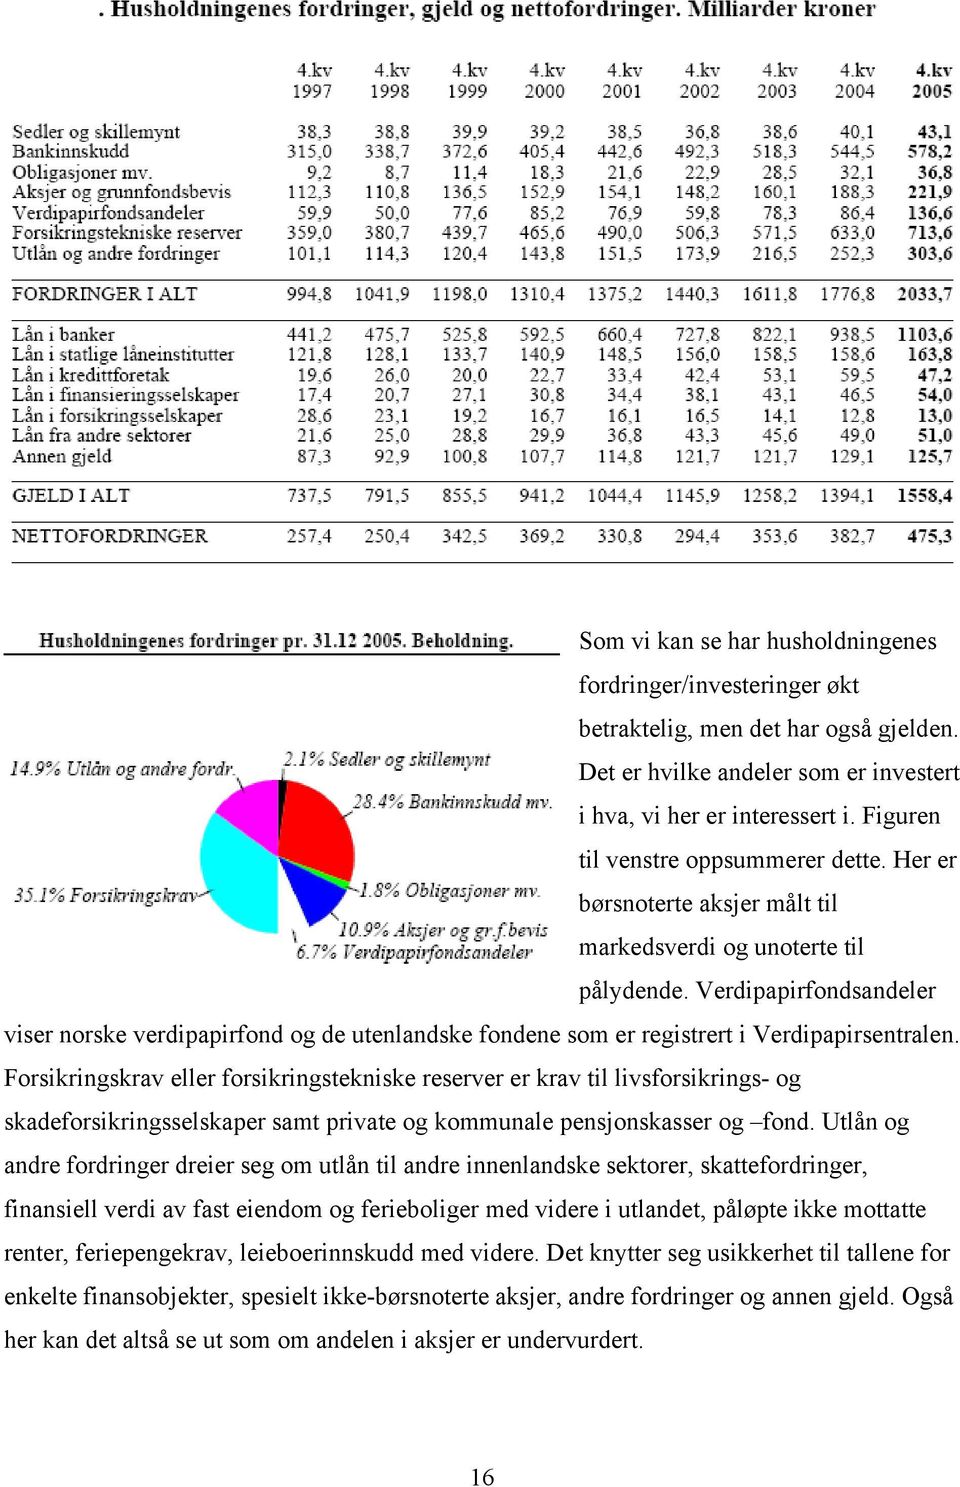 Verdipapirfondsandeler viser norske verdipapirfond og de utenlandske fondene som er registrert i Verdipapirsentralen.